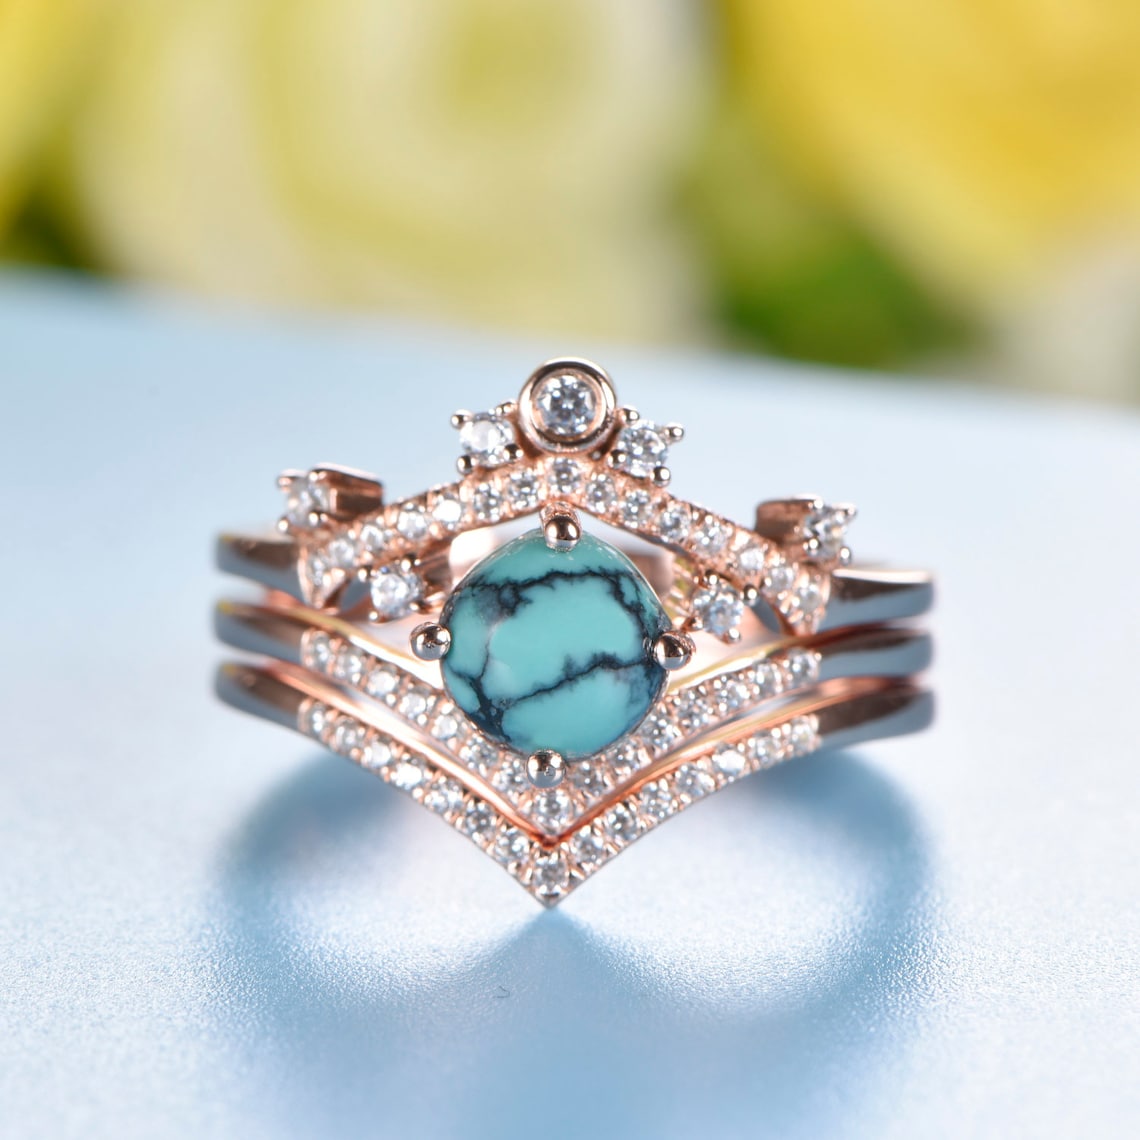 7mm Round Turquoise Engagement Ring Set 14k Rose Gold Diamond - Etsy